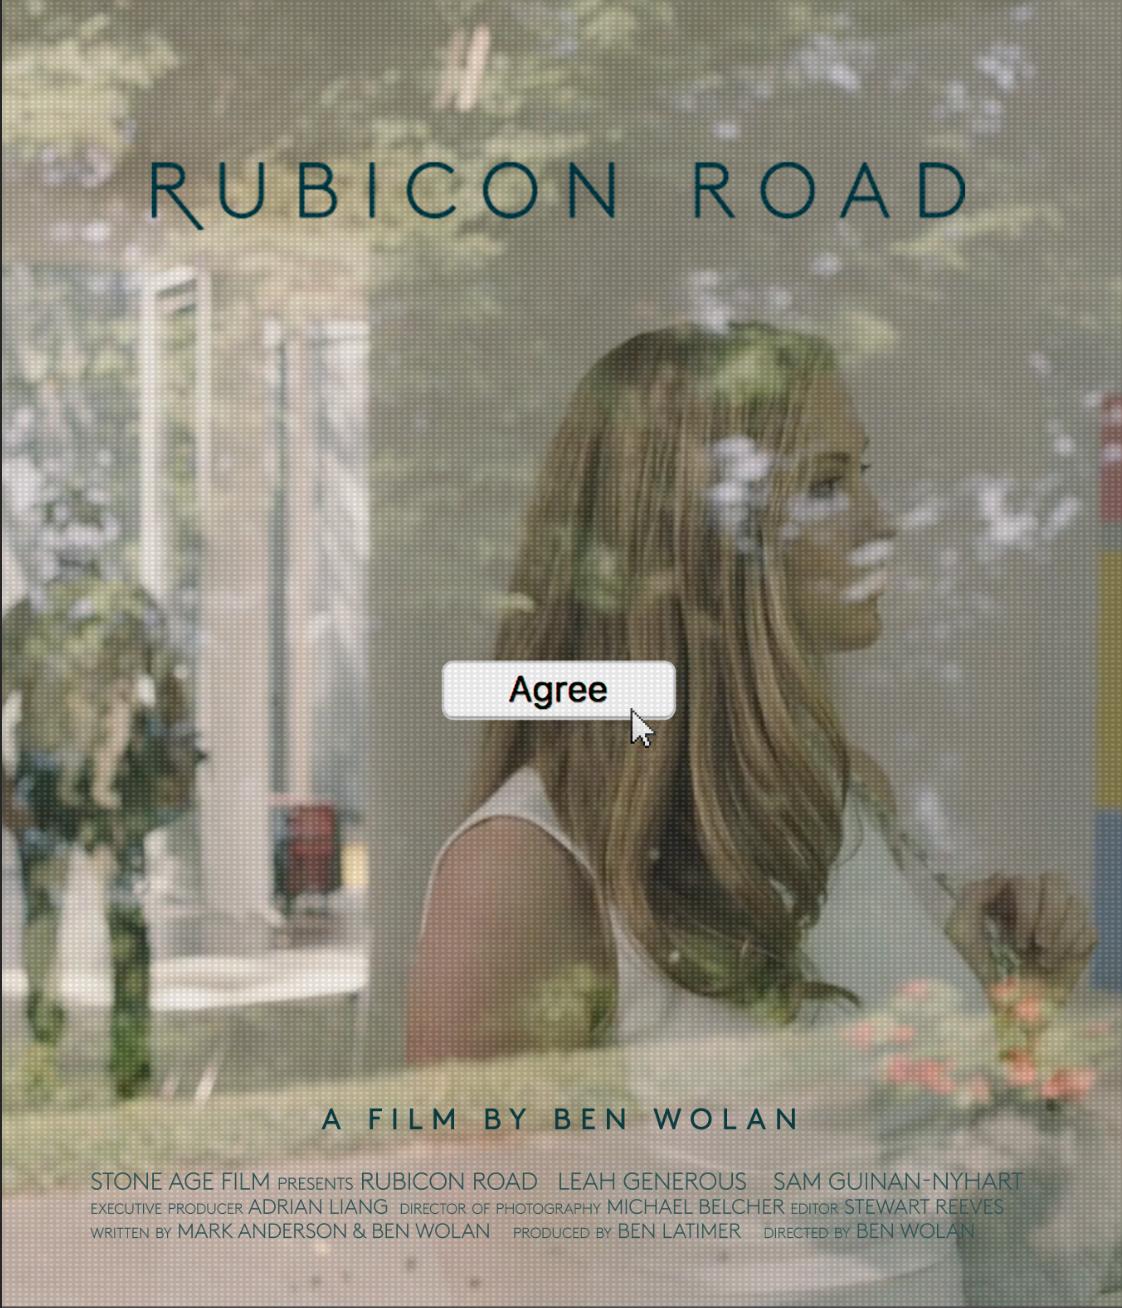 Rubicon Road